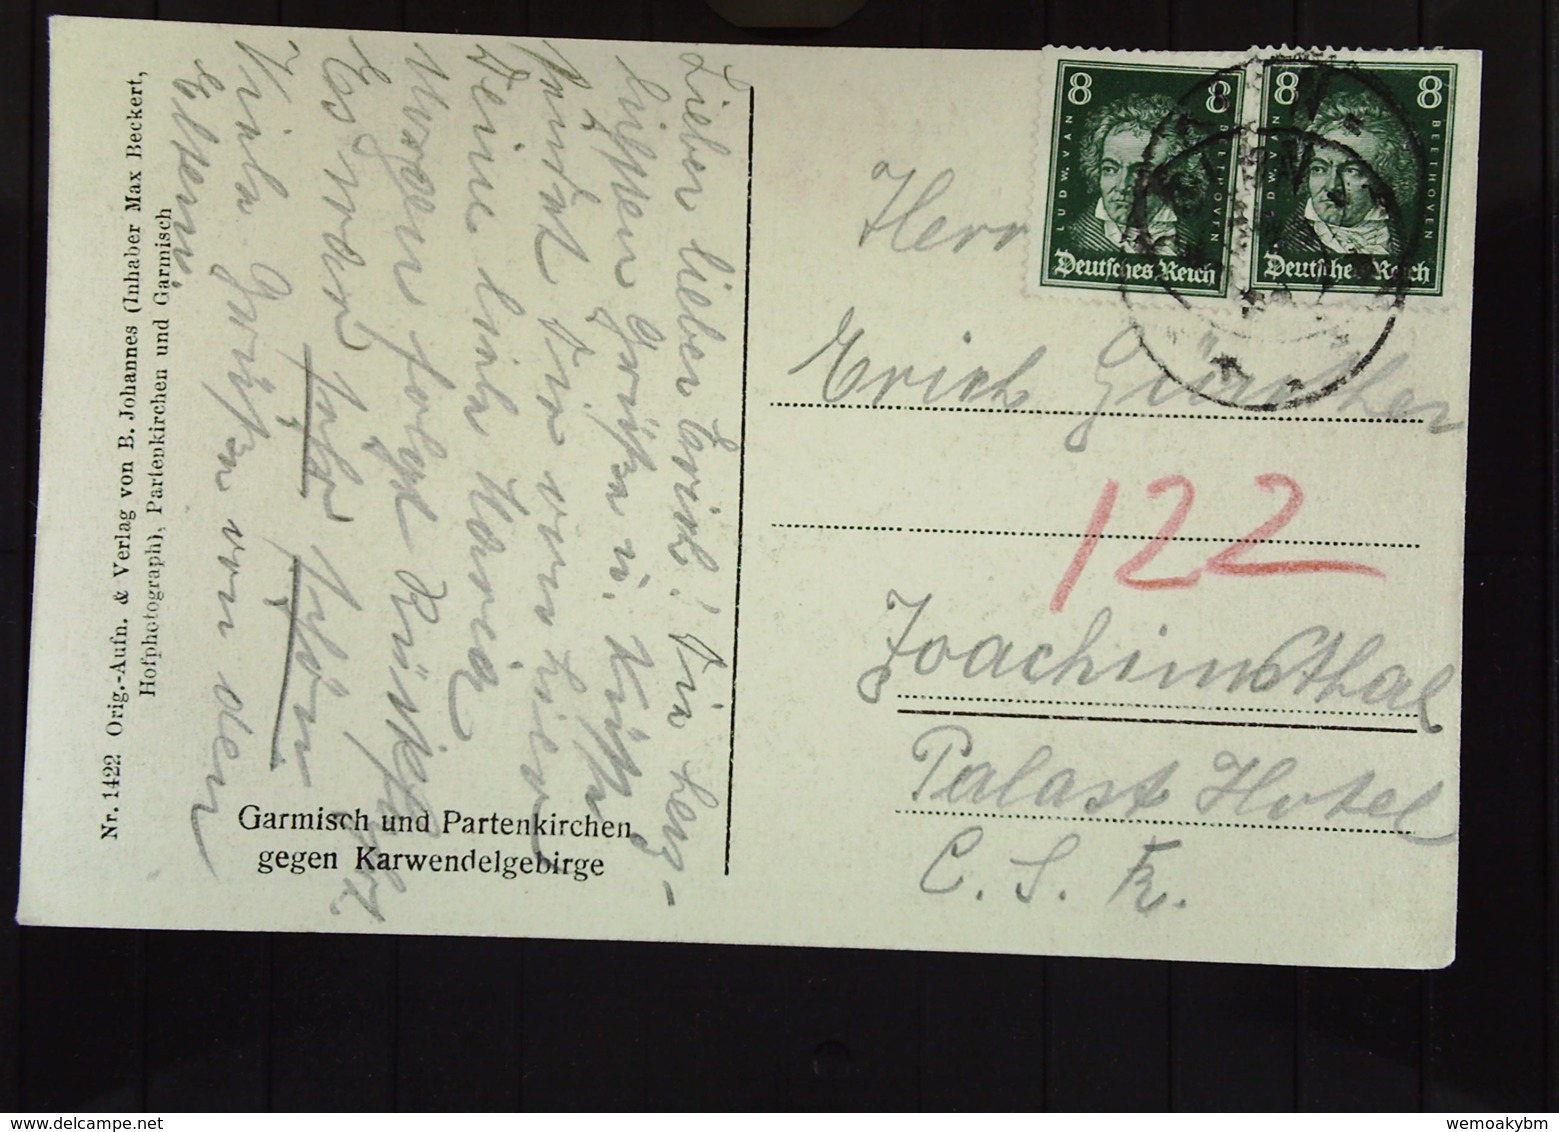 DR Bis 32: Ansichtskarte Mit 8 Pf Beethoven Nach Der CSR Ansicht: Garmisch Und Patenkirchen Knr: 389 (2) - Briefe U. Dokumente